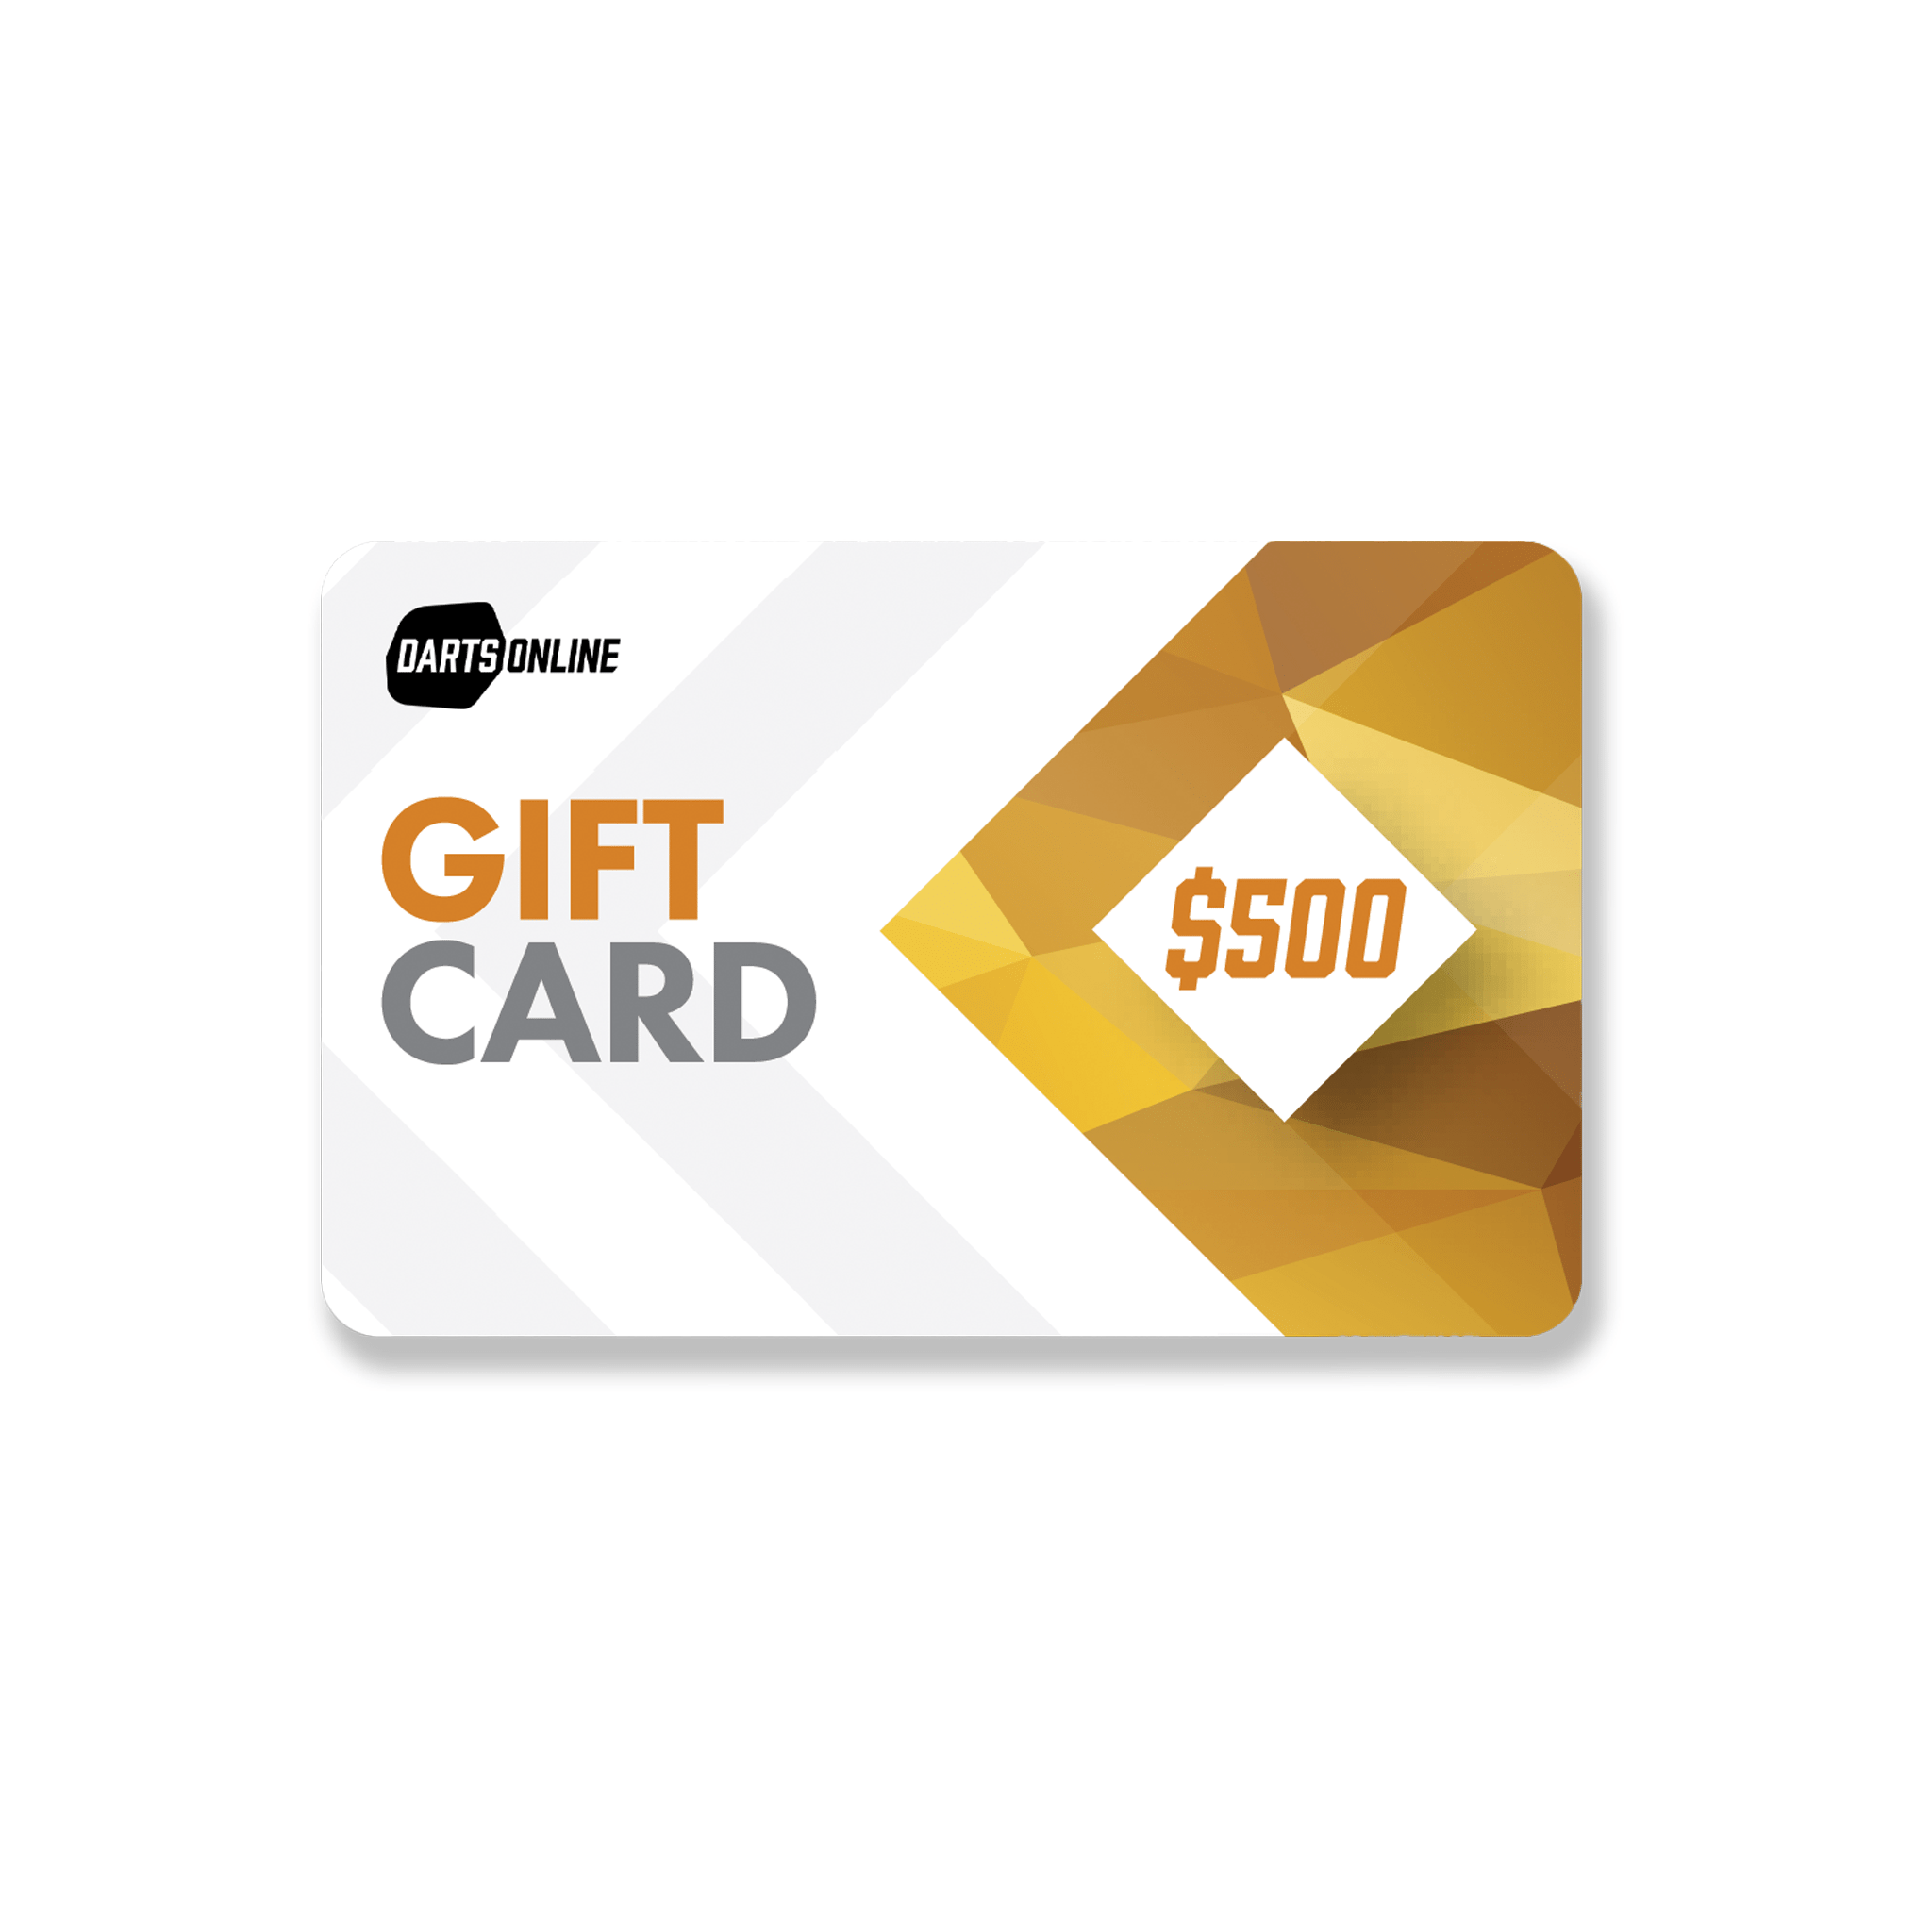 Darts Online Darts Online Gift Card $500.00 Gift Card